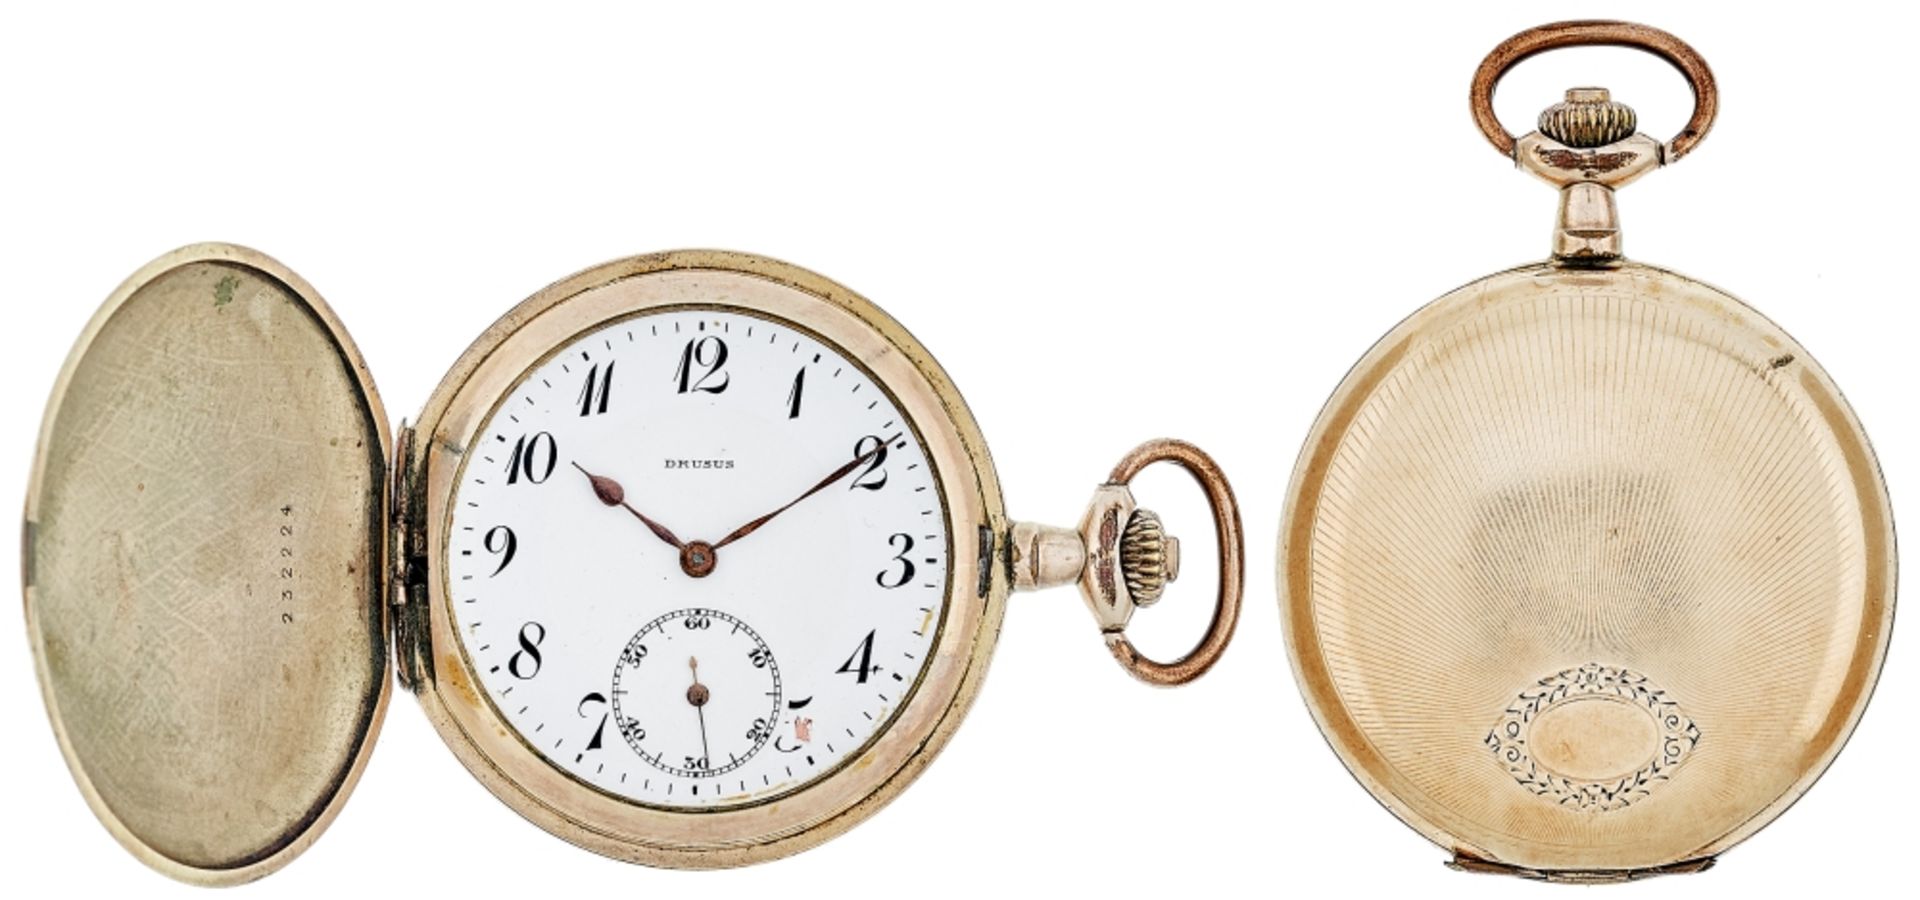 Pocket-watch \\Drusus\\ Savonette 1915-1930, design mark: bull (G. Rough Pforzheim), Germany,